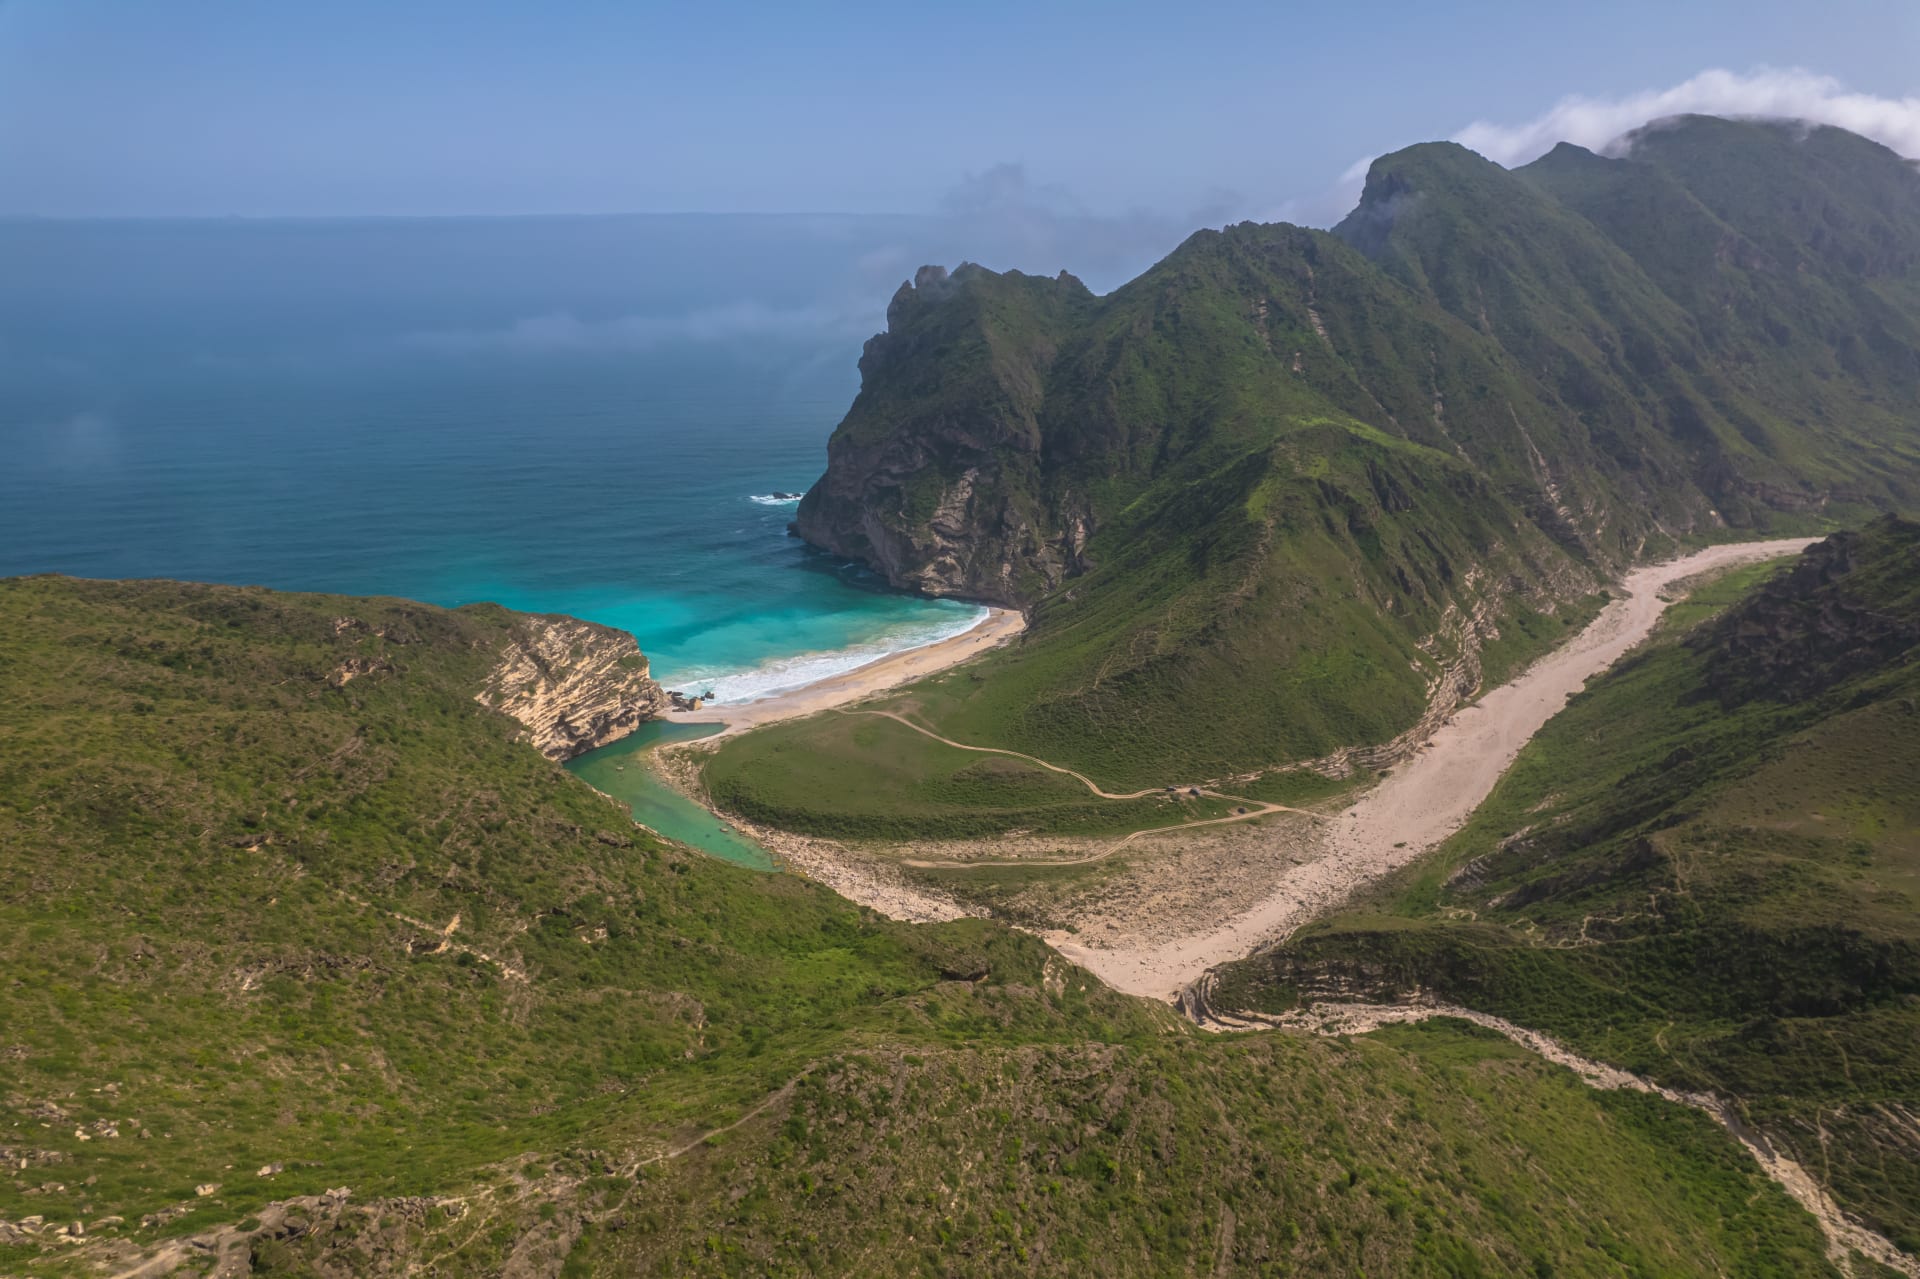 ليست جزر هاواي.. مشهد لجبال خضراء تعانق مياه البحر في سلطنة عمان يثير الحيرة